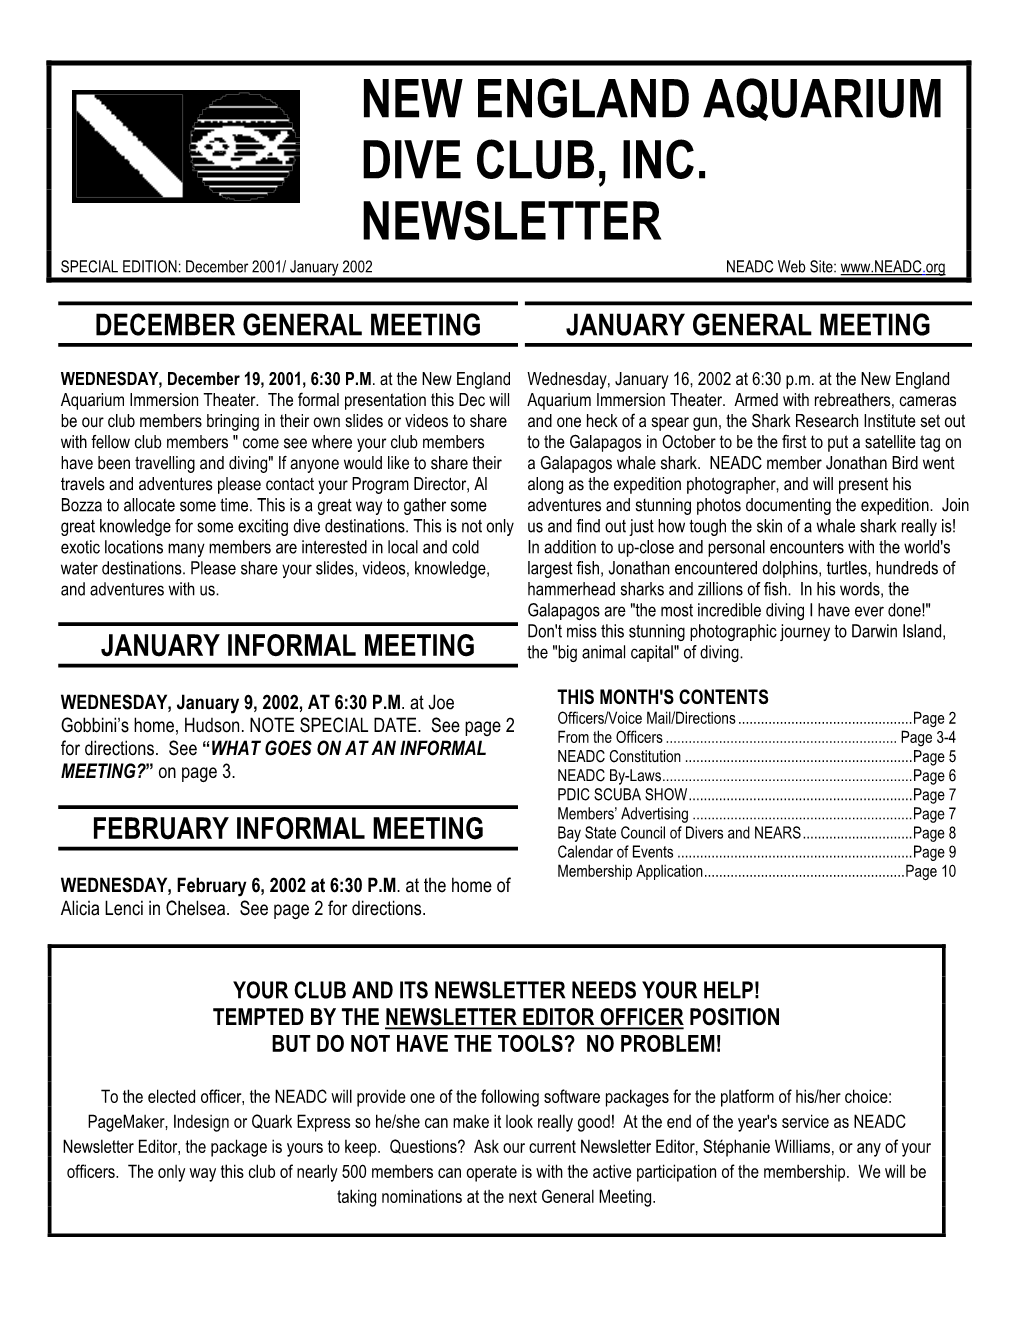 December 2001/January 2002 Newsletter